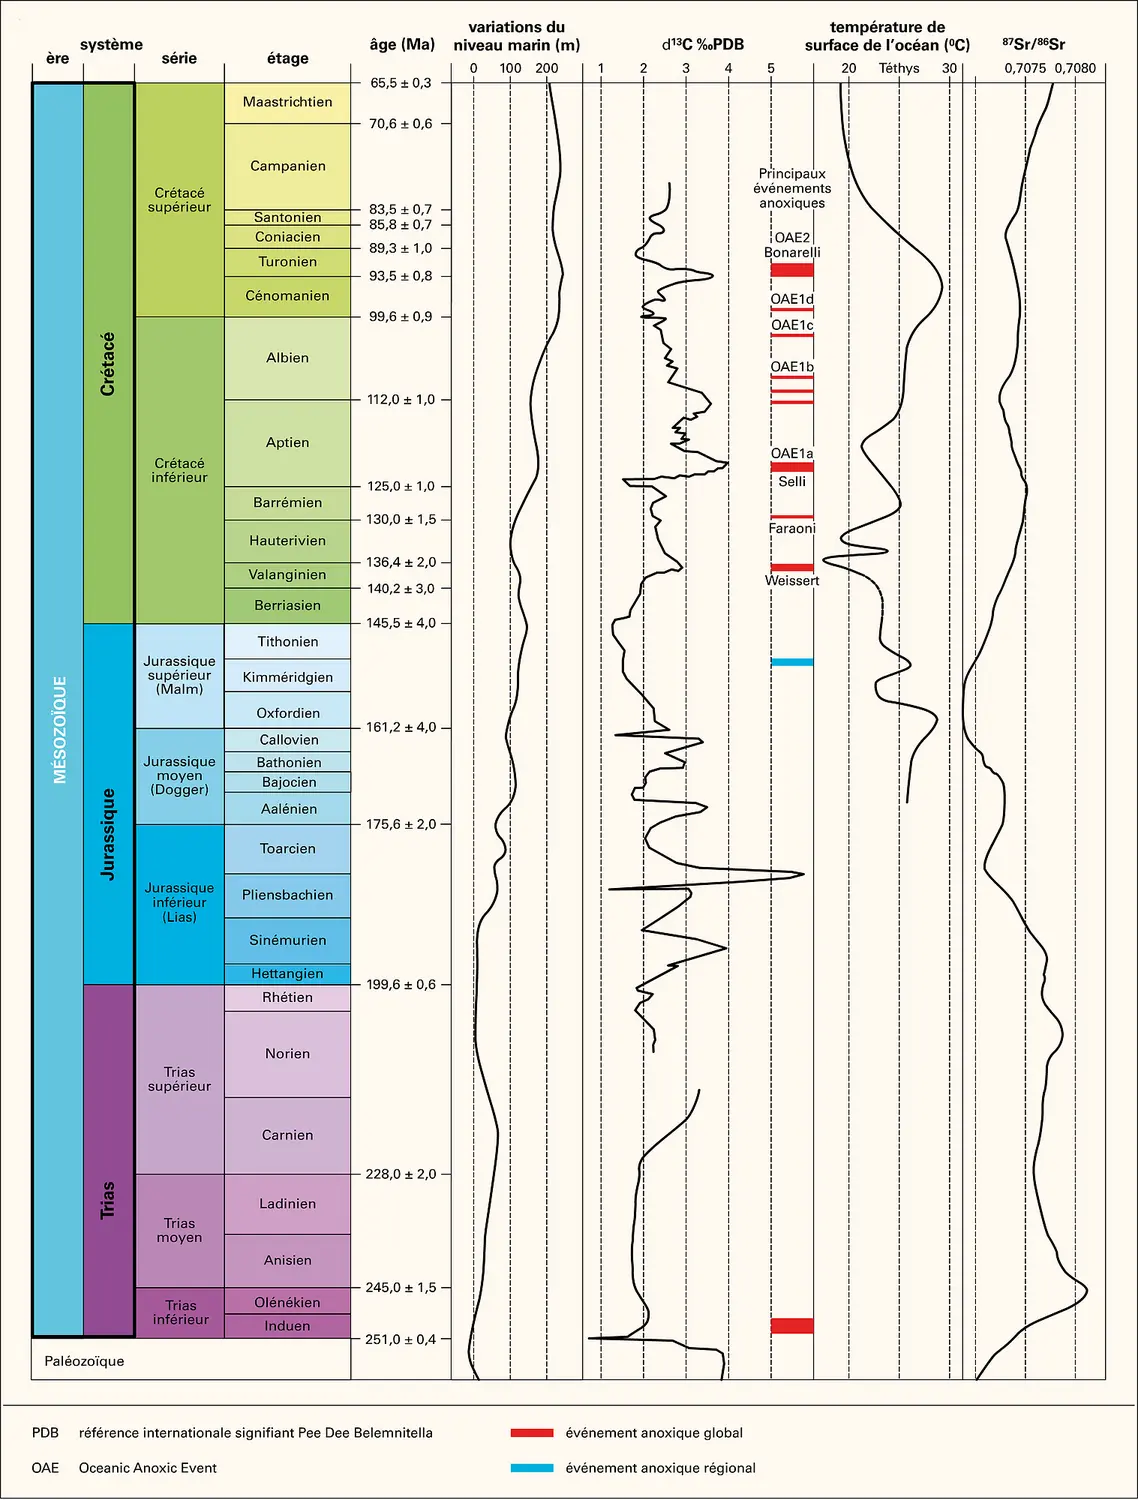 Mésozoïque : variation du niveau marin, de la température des océans et de rapports isotopiques